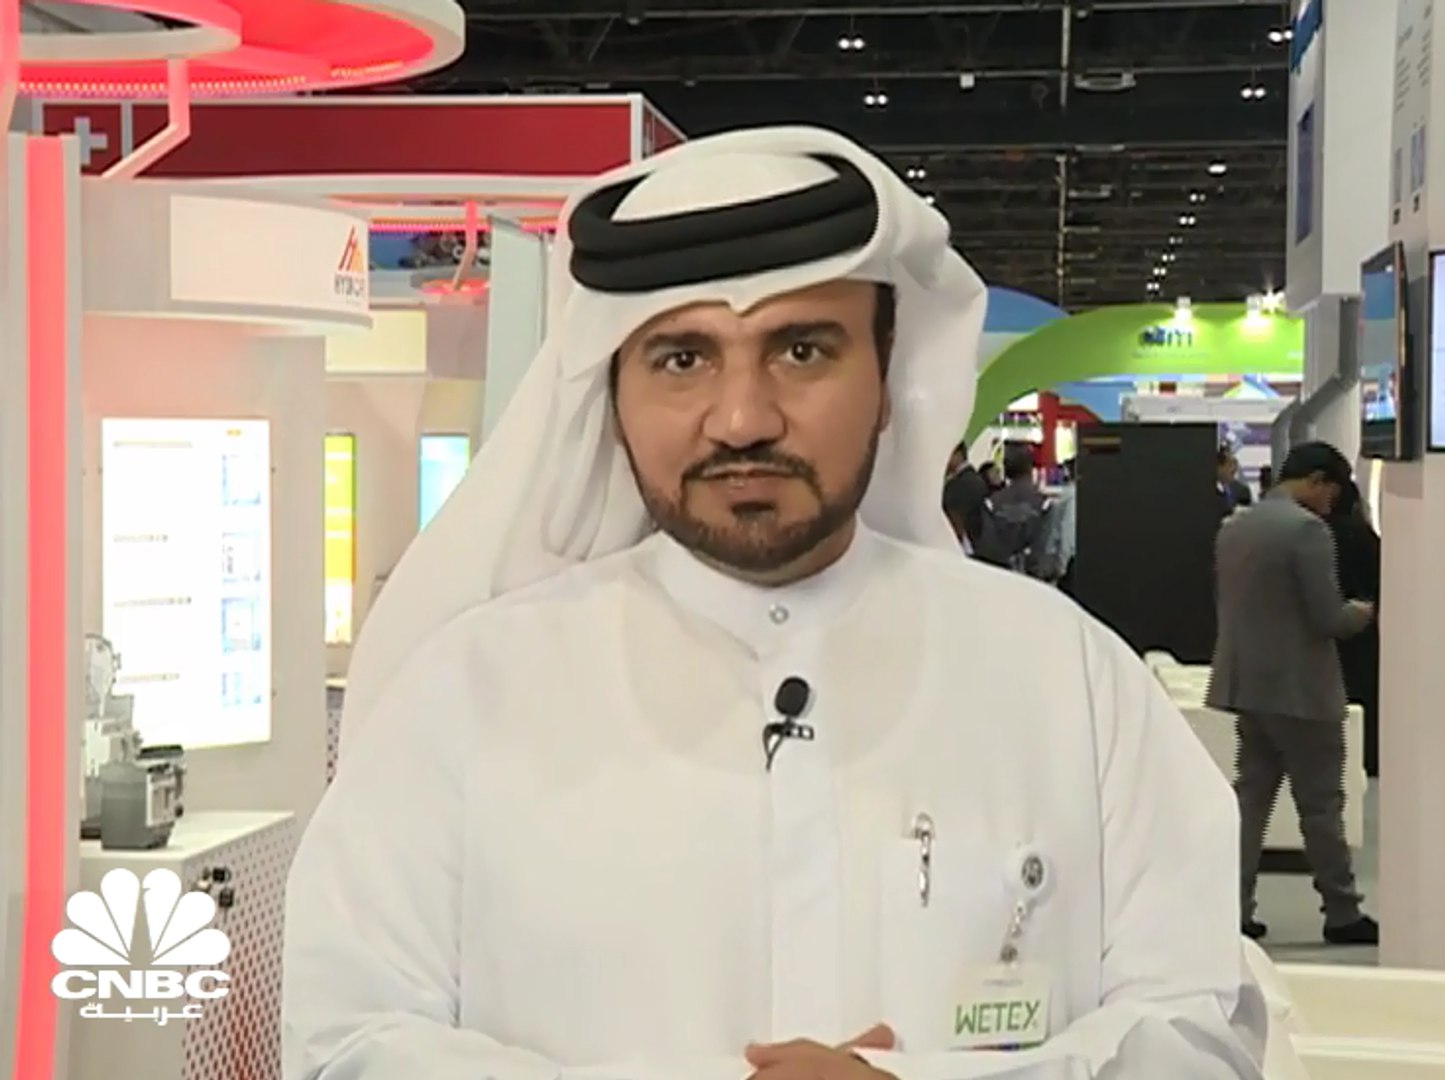 مدير إدارة المياه في هيئة كهرباء ومياه الشارقة لـCNBC عربية: الاستراتيجيات  الآن بشكل عام هي التوجه نحو الطاقة المتجددة - video Dailymotion